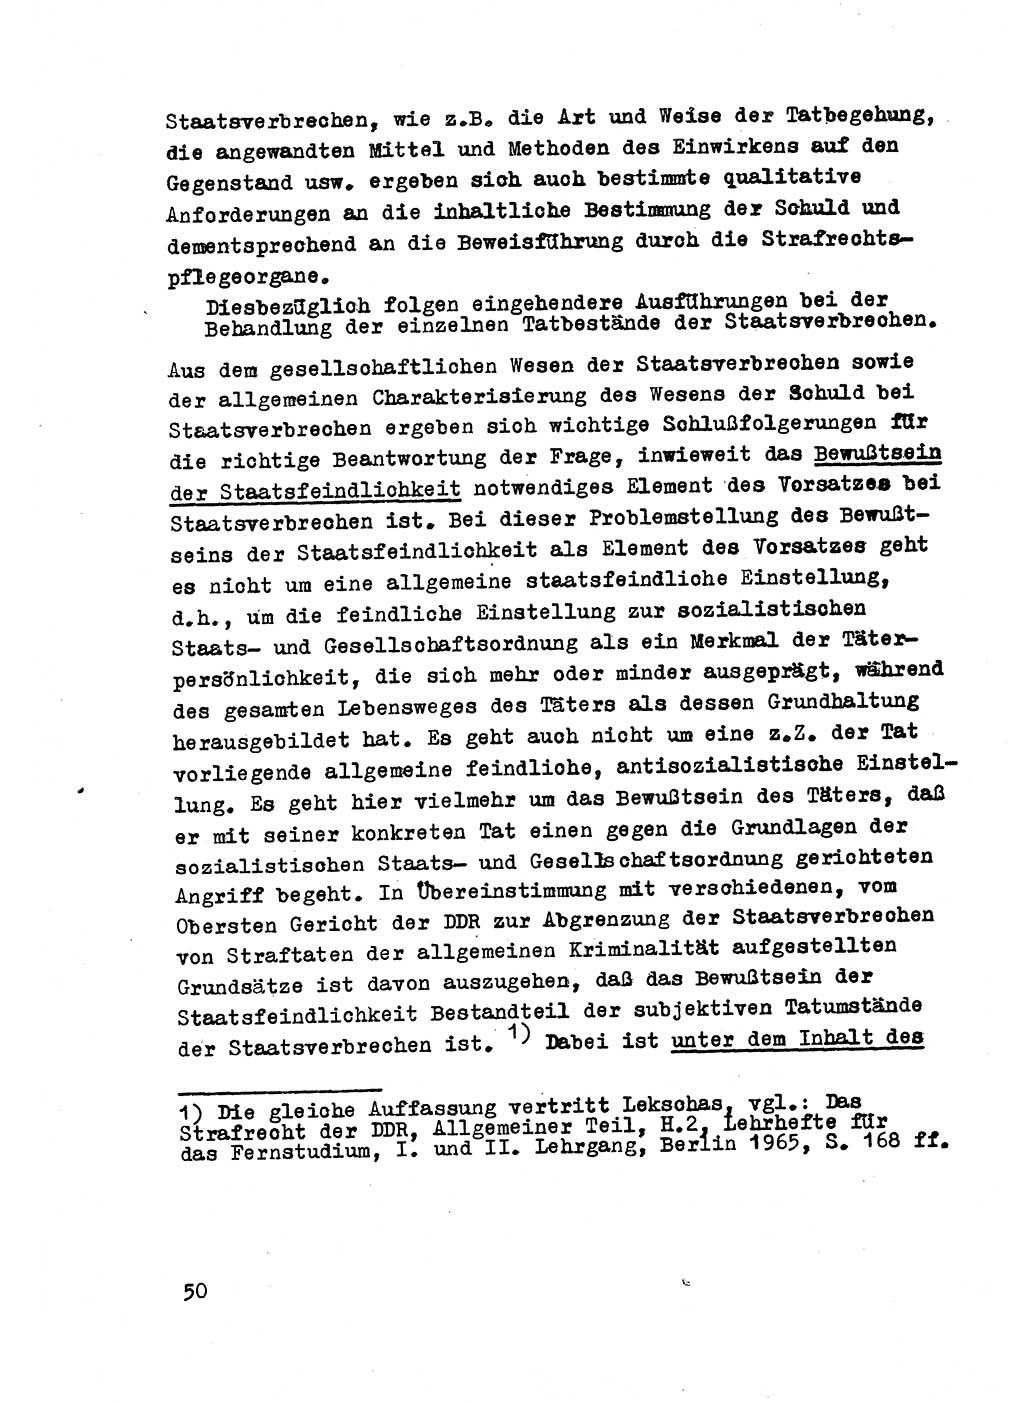 Strafrecht der DDR (Deutsche Demokratische Republik), Besonderer Teil, Lehrmaterial, Heft 2 1969, Seite 50 (Strafr. DDR BT Lehrmat. H. 2 1969, S. 50)